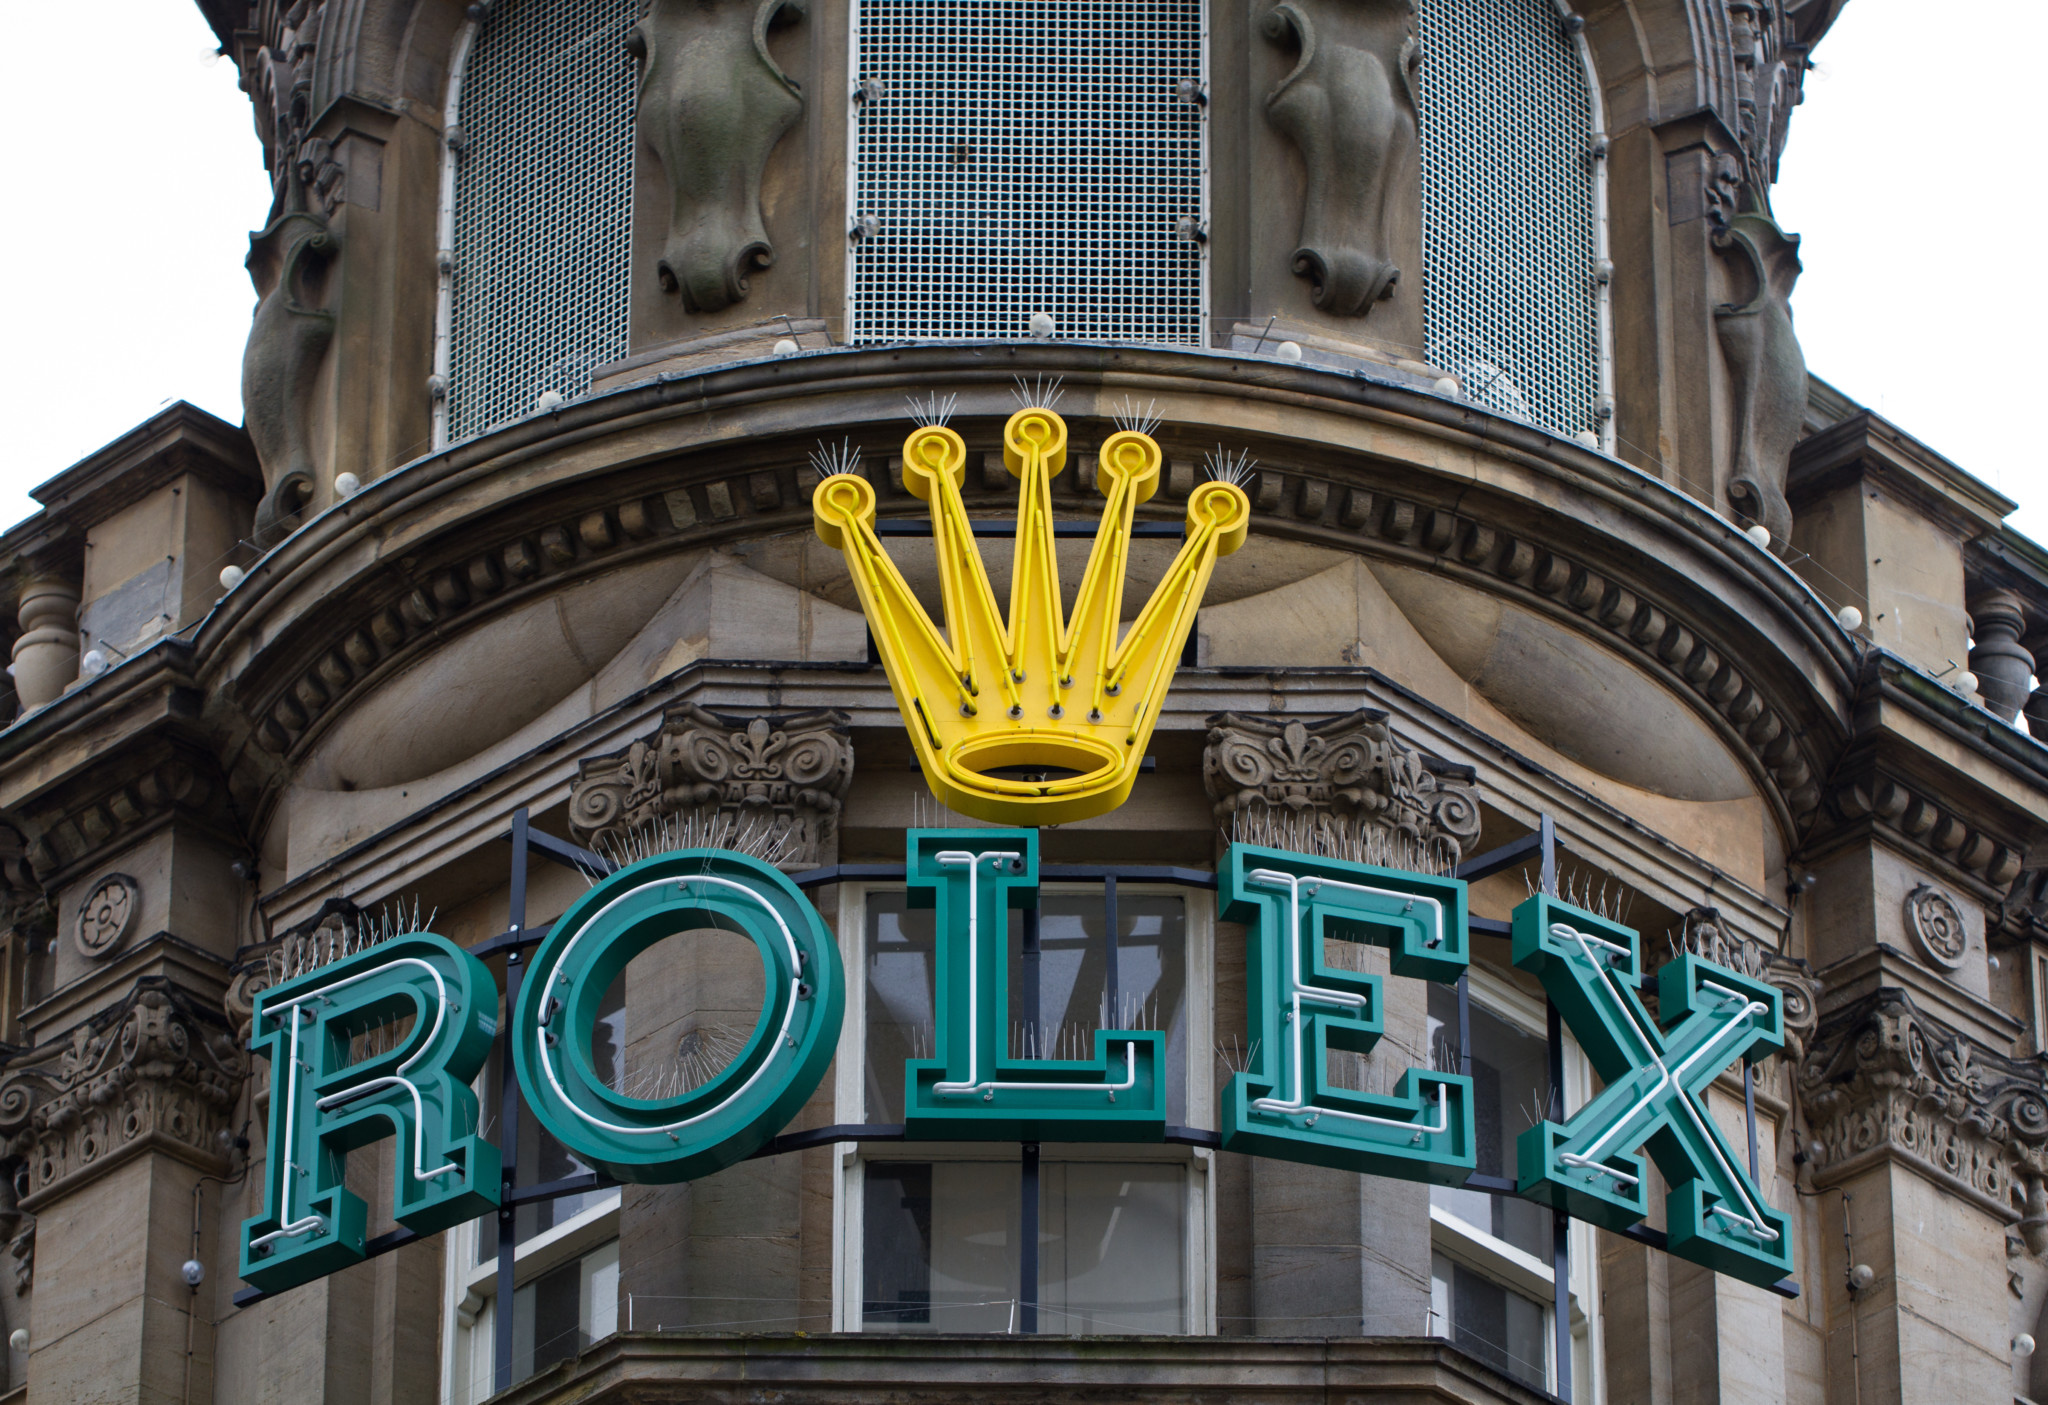 Rolex shop sign